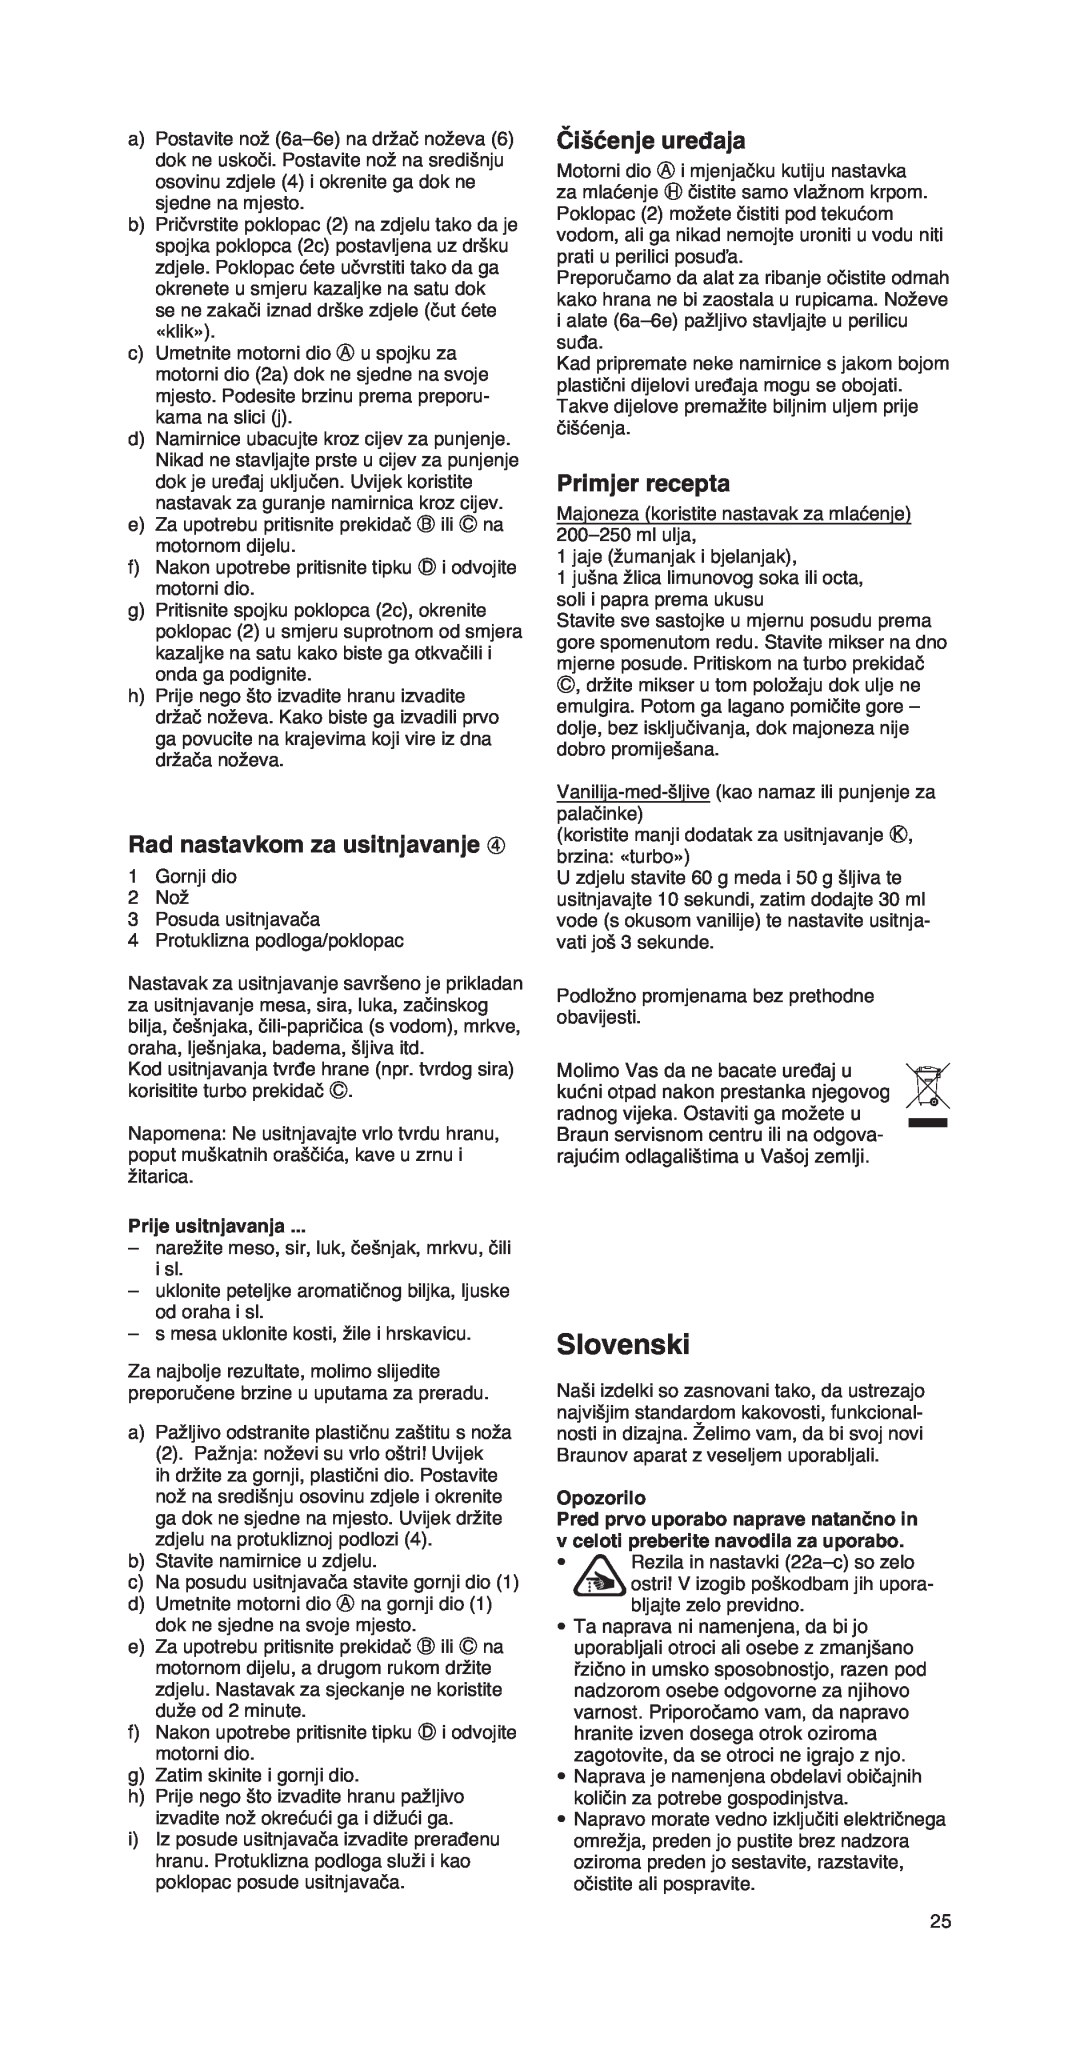 Braun MR 550 Buffet manual Slovenski, Rad nastavkom za usitnjavanje, Čišćenje uređaja, Primjer recepta, Opozorilo 